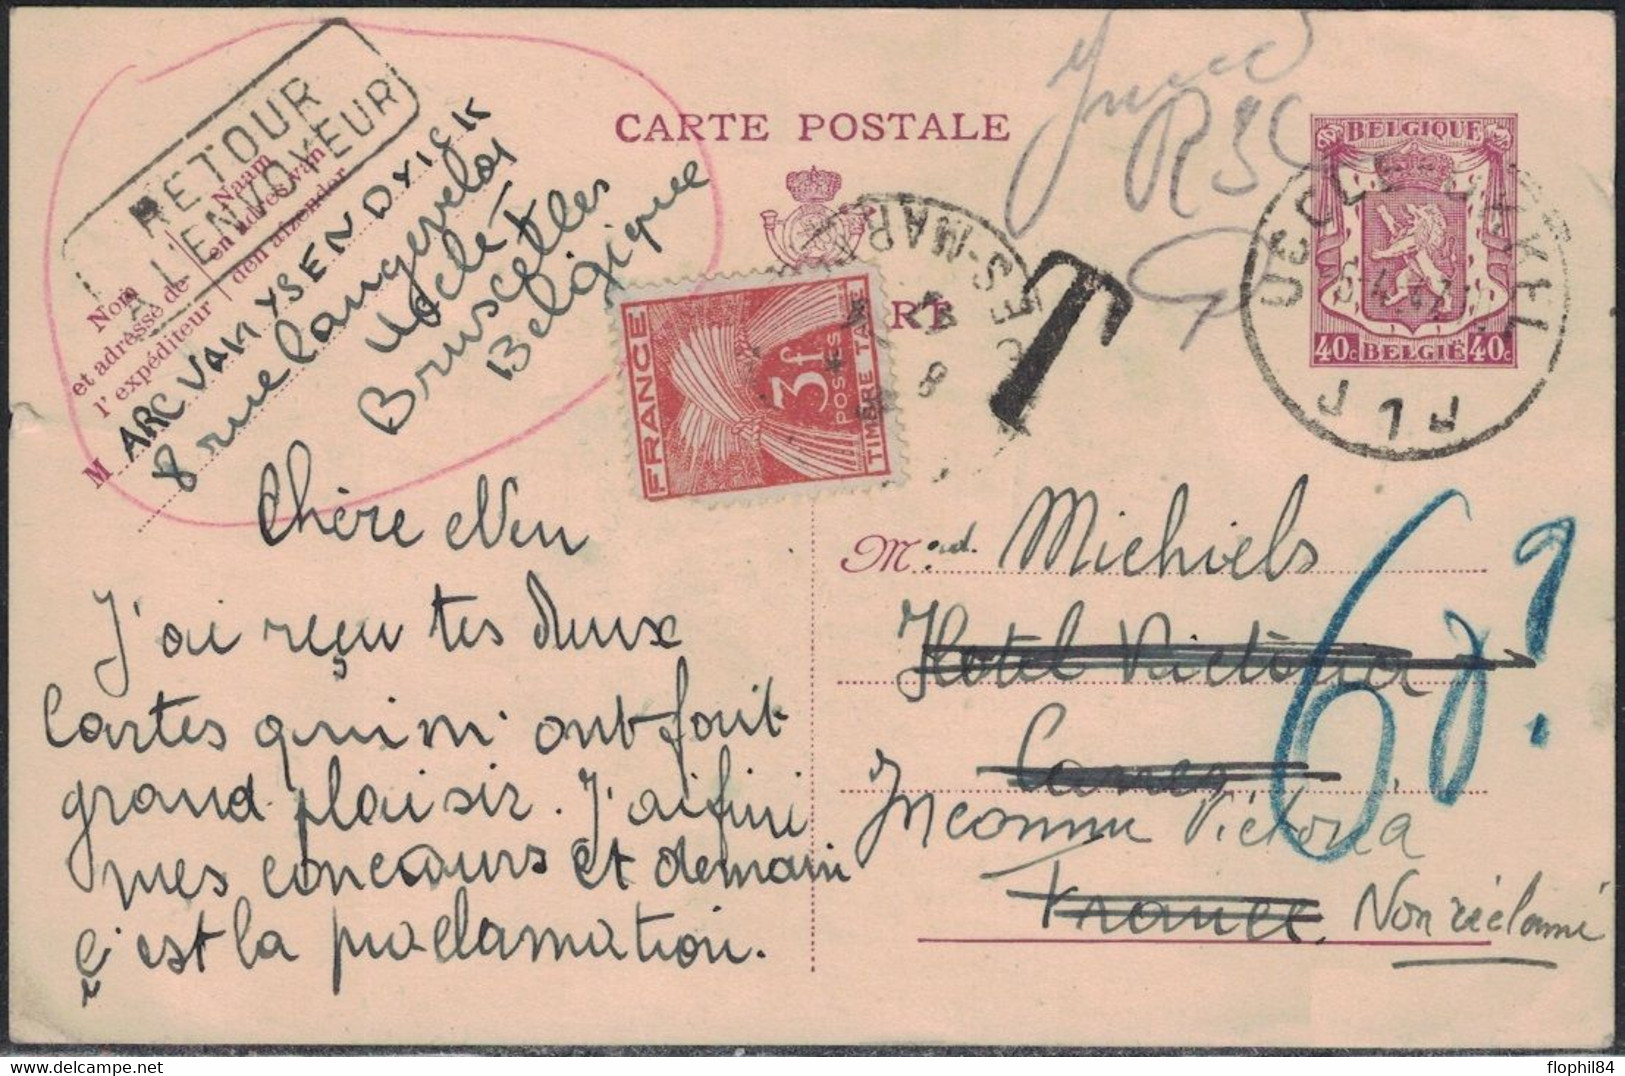 BELGIQUE - ENTIER POSTAL POUR LA FRANCE - TAXE GERBE 3F - RETOUR ENVOYEUR - NON RECLAME. - 1960-.... Briefe & Dokumente